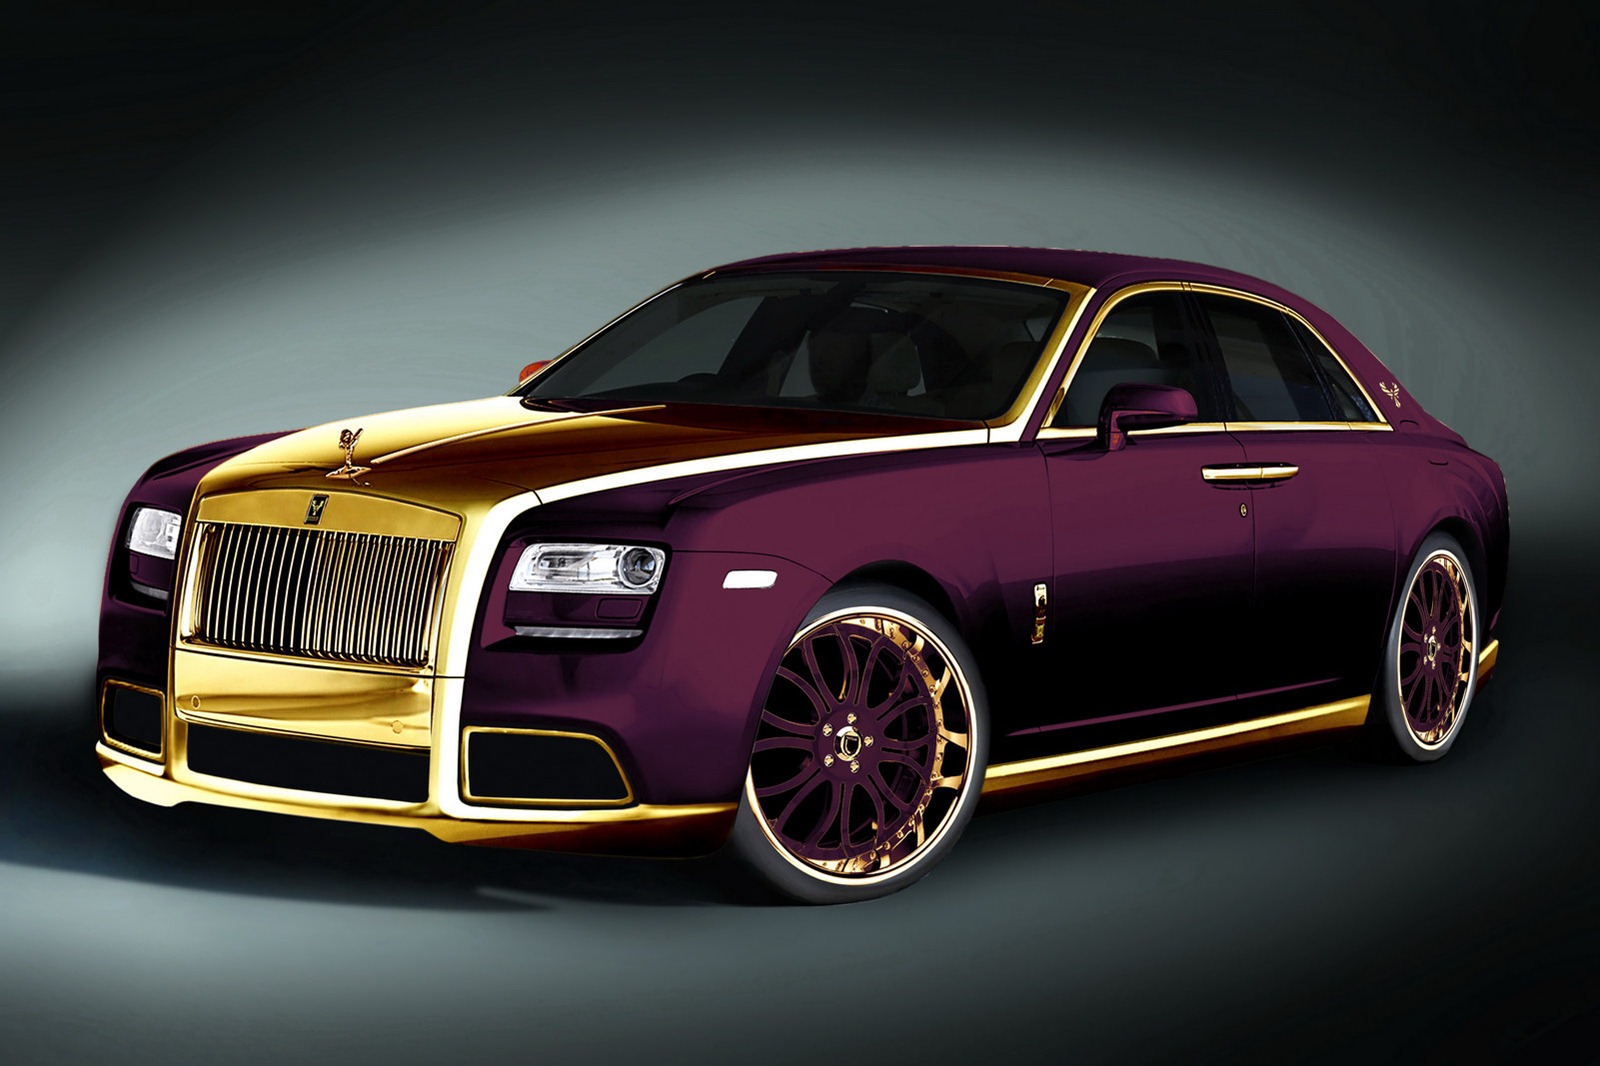 2015 Rolls Royce Phantom Wallpaper Hd - 10 Million Rolls Royce - HD Wallpaper 